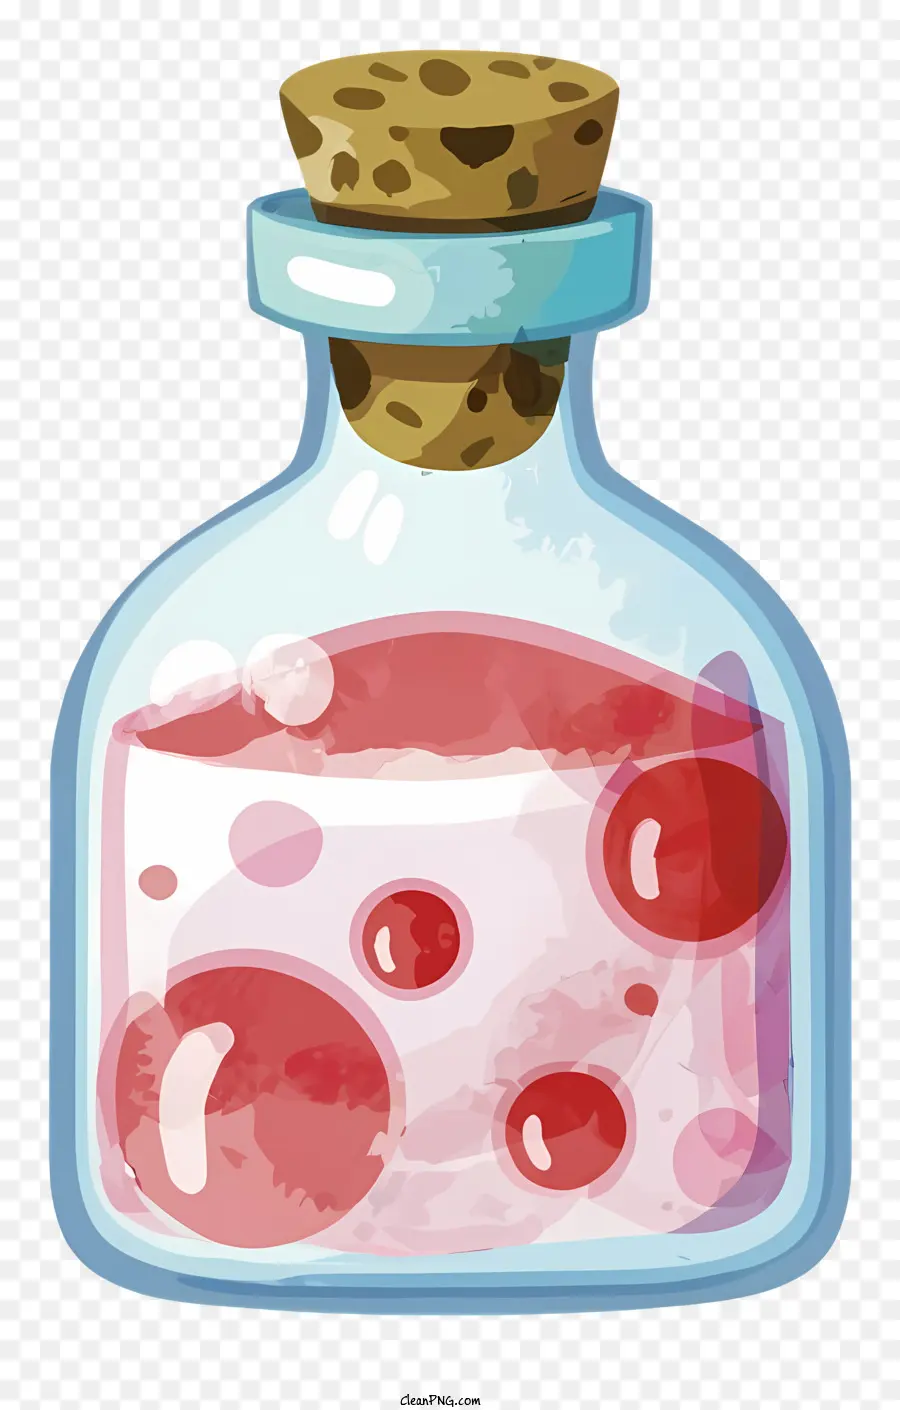 Cartoonglas Flasche Pink Flüssige Medizin Trank - Eine saubere Glasflasche mit rosa flüssiger und roter Aufkleber, geeignet für verschiedene Verwendungen